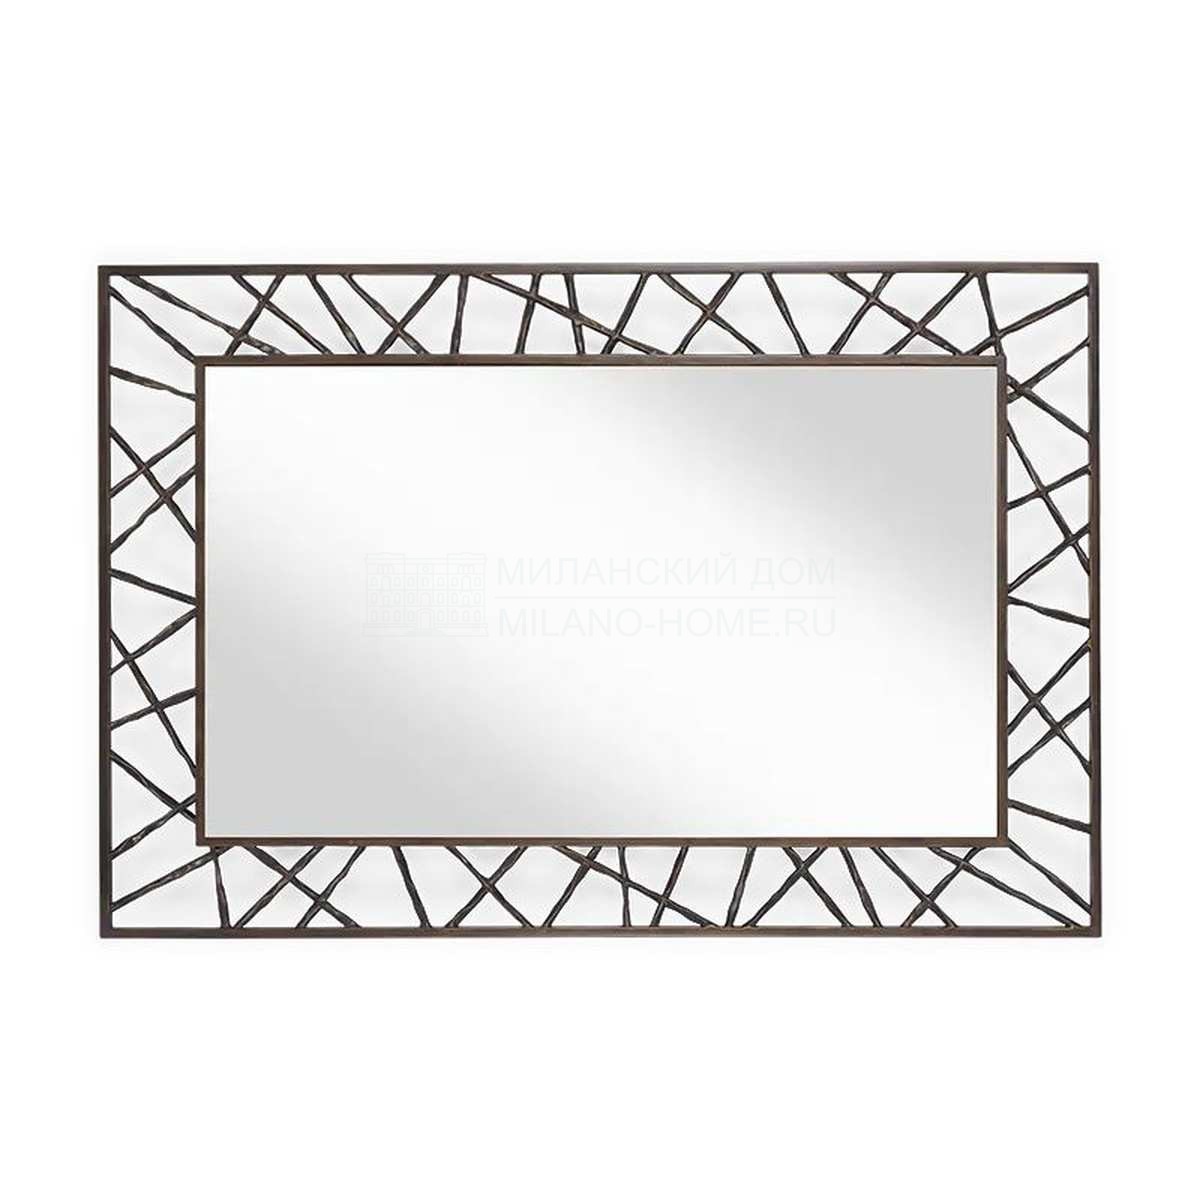 Зеркало настенное Mondrian mirror из США фабрики CHRISTOPHER GUY